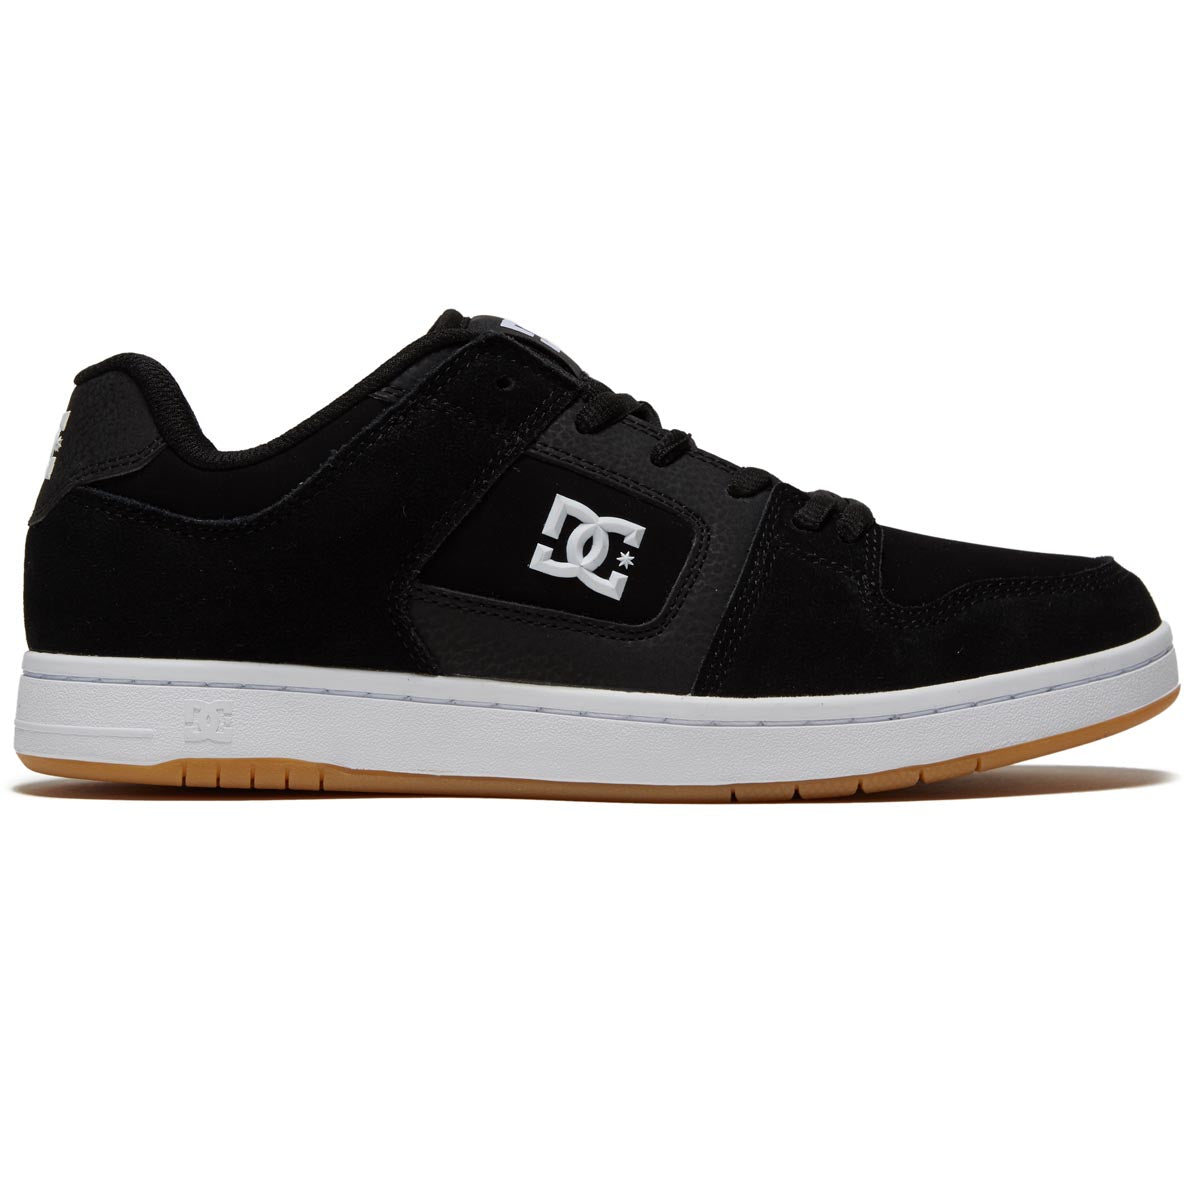 DC Manteca 4 Shoes - Black/White/Gum image 1